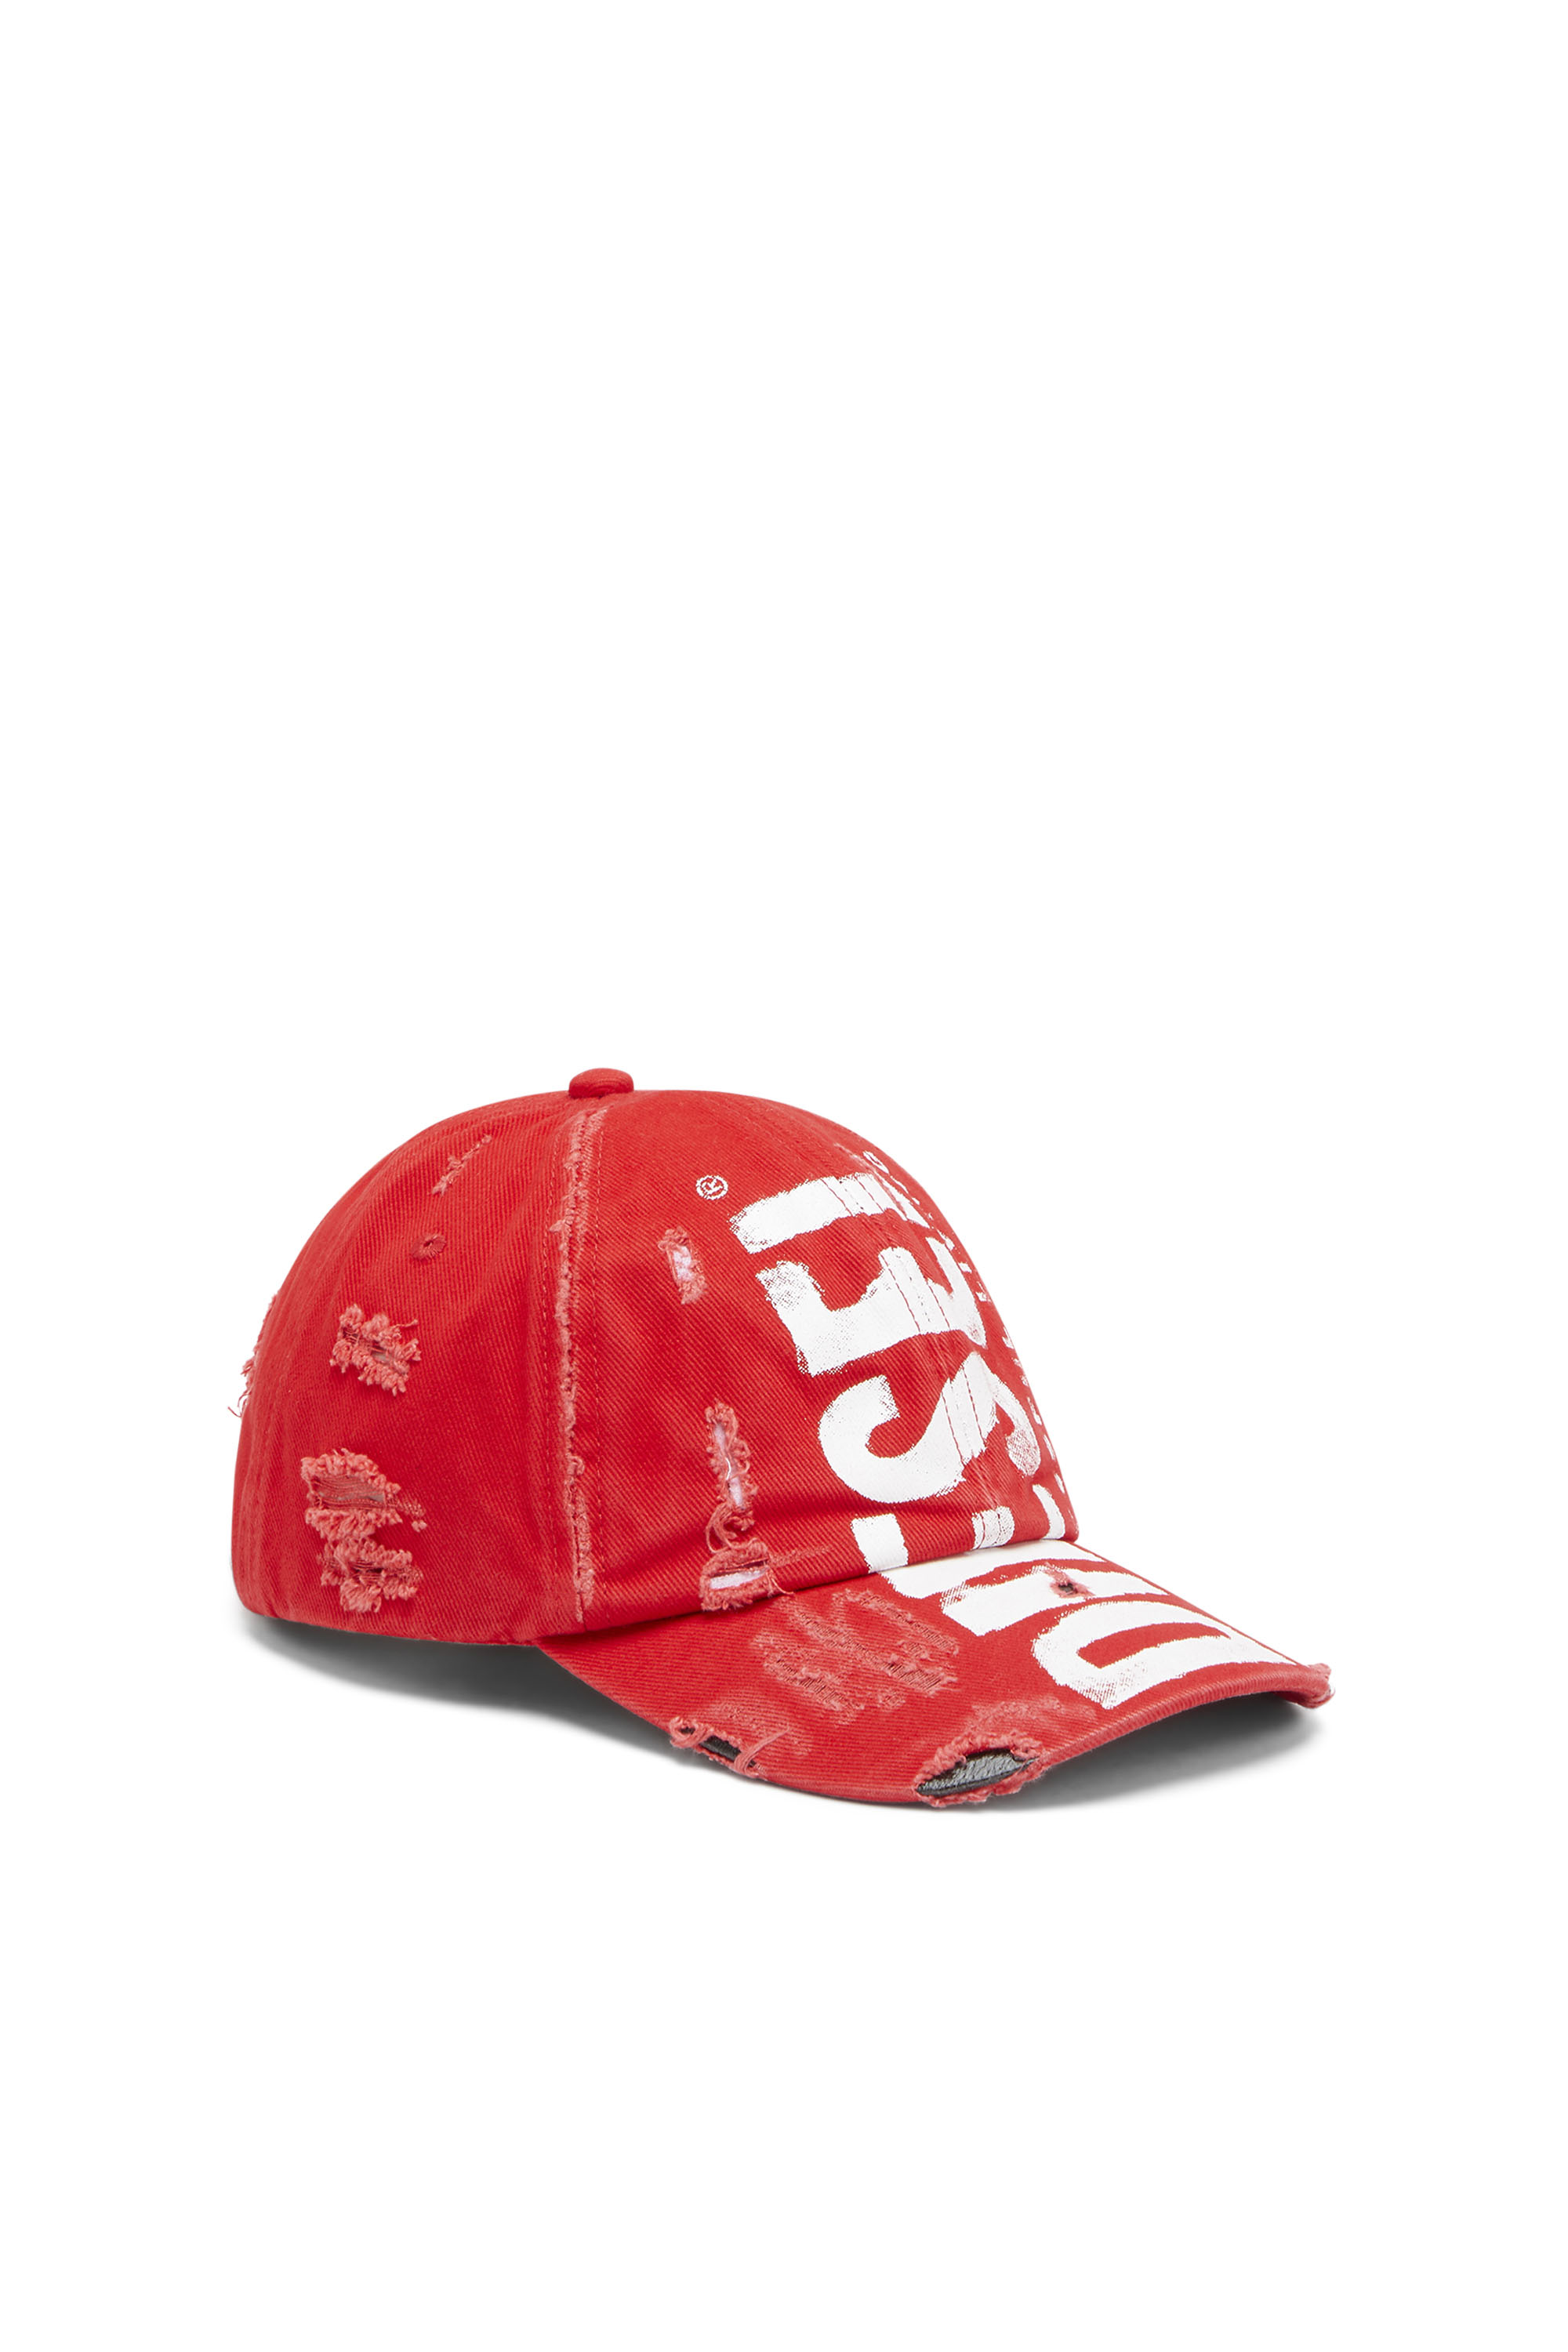 Diesel - Berretto da baseball con scritta Diesel - Cappelli - Unisex - Rosso